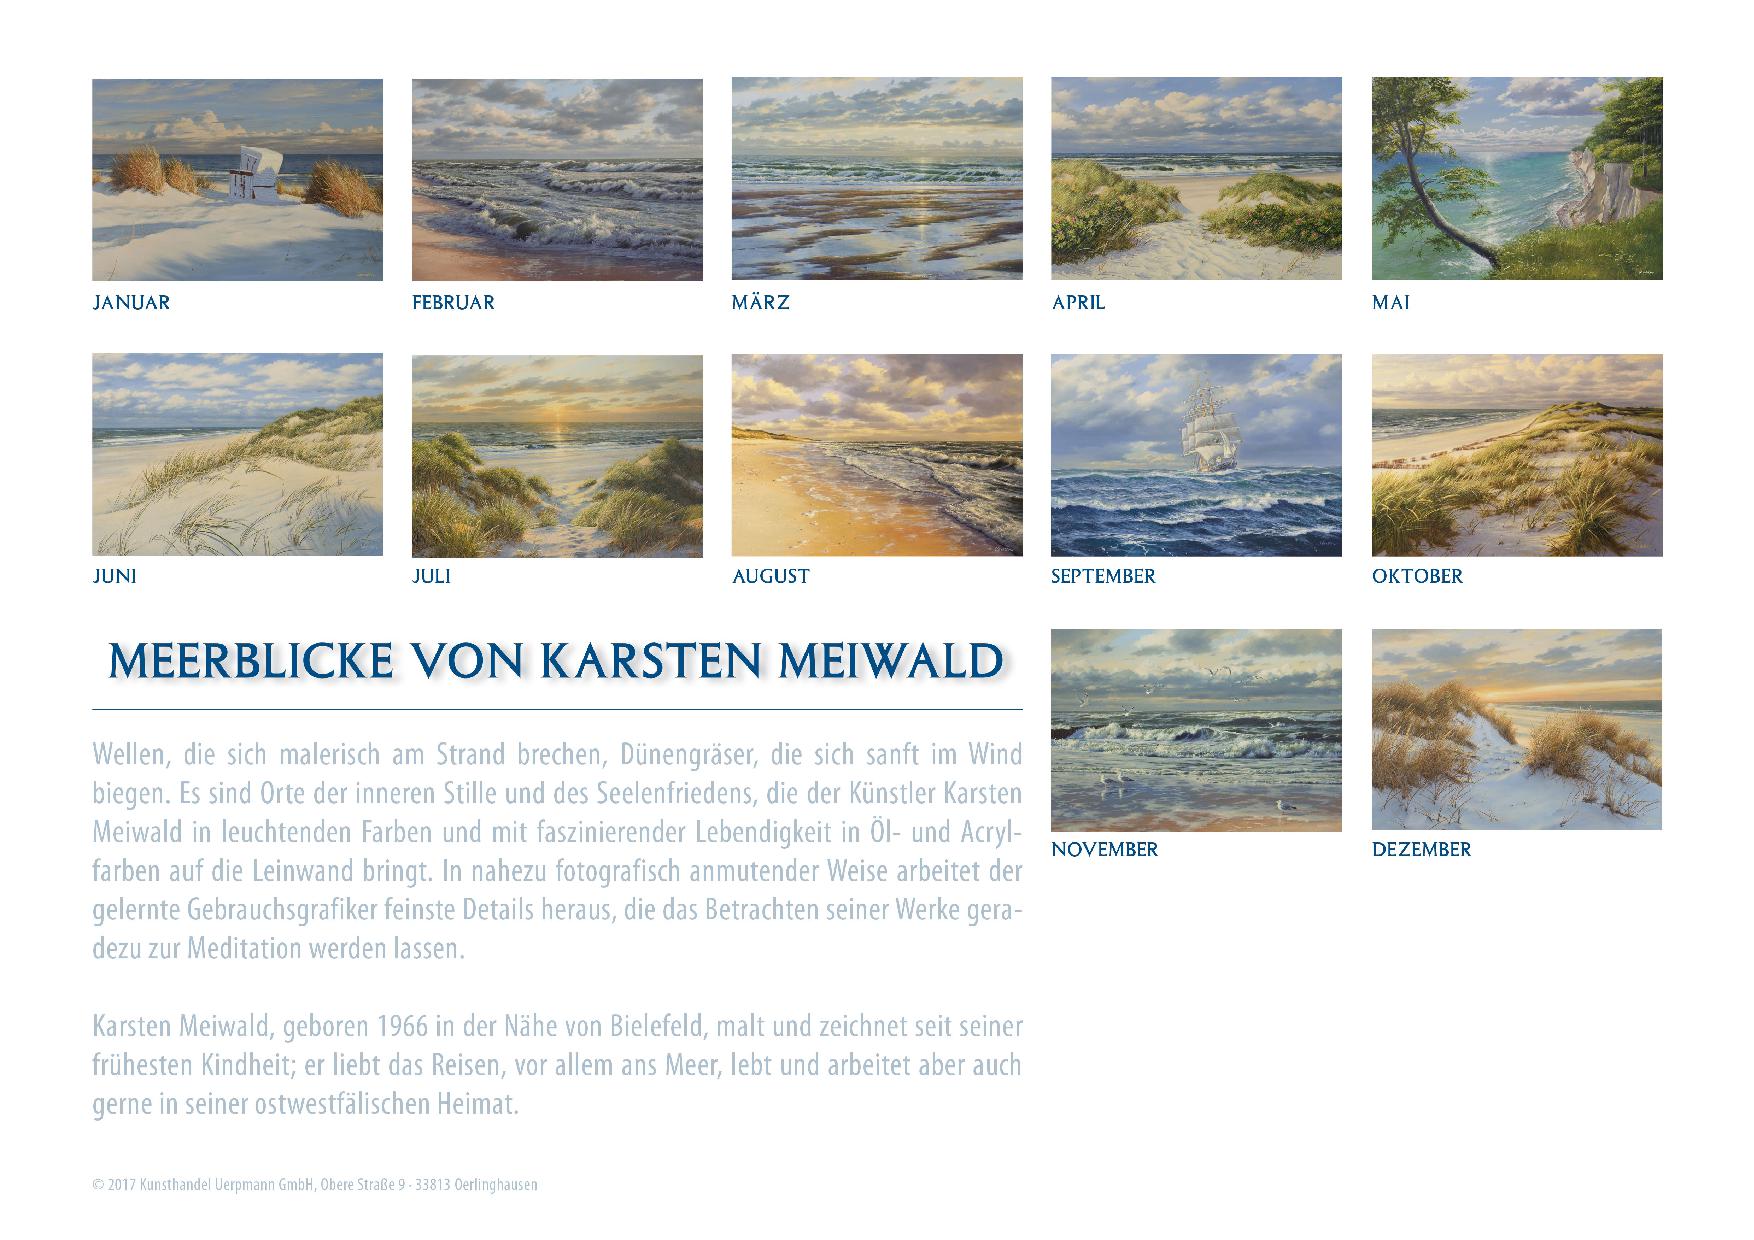 Kalender 2018 von Karsten Meiwald - Meerblicke